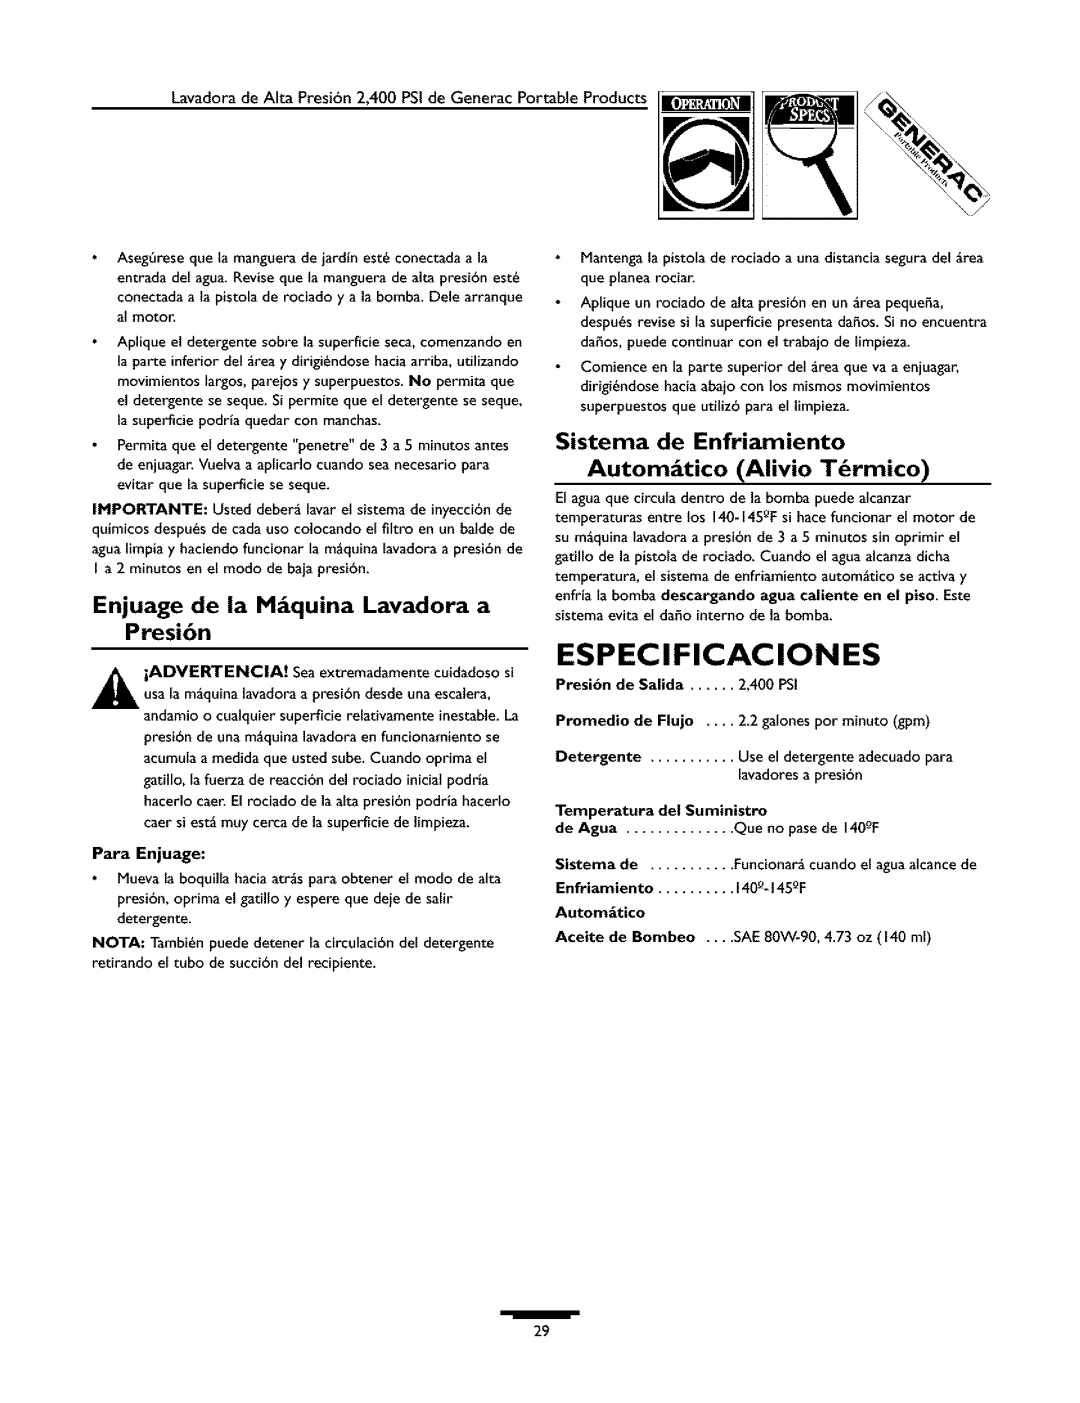 Generac 1537-0 owner manual Especificaciones, Enjuage de la M quina Lavadora a Presi6n 